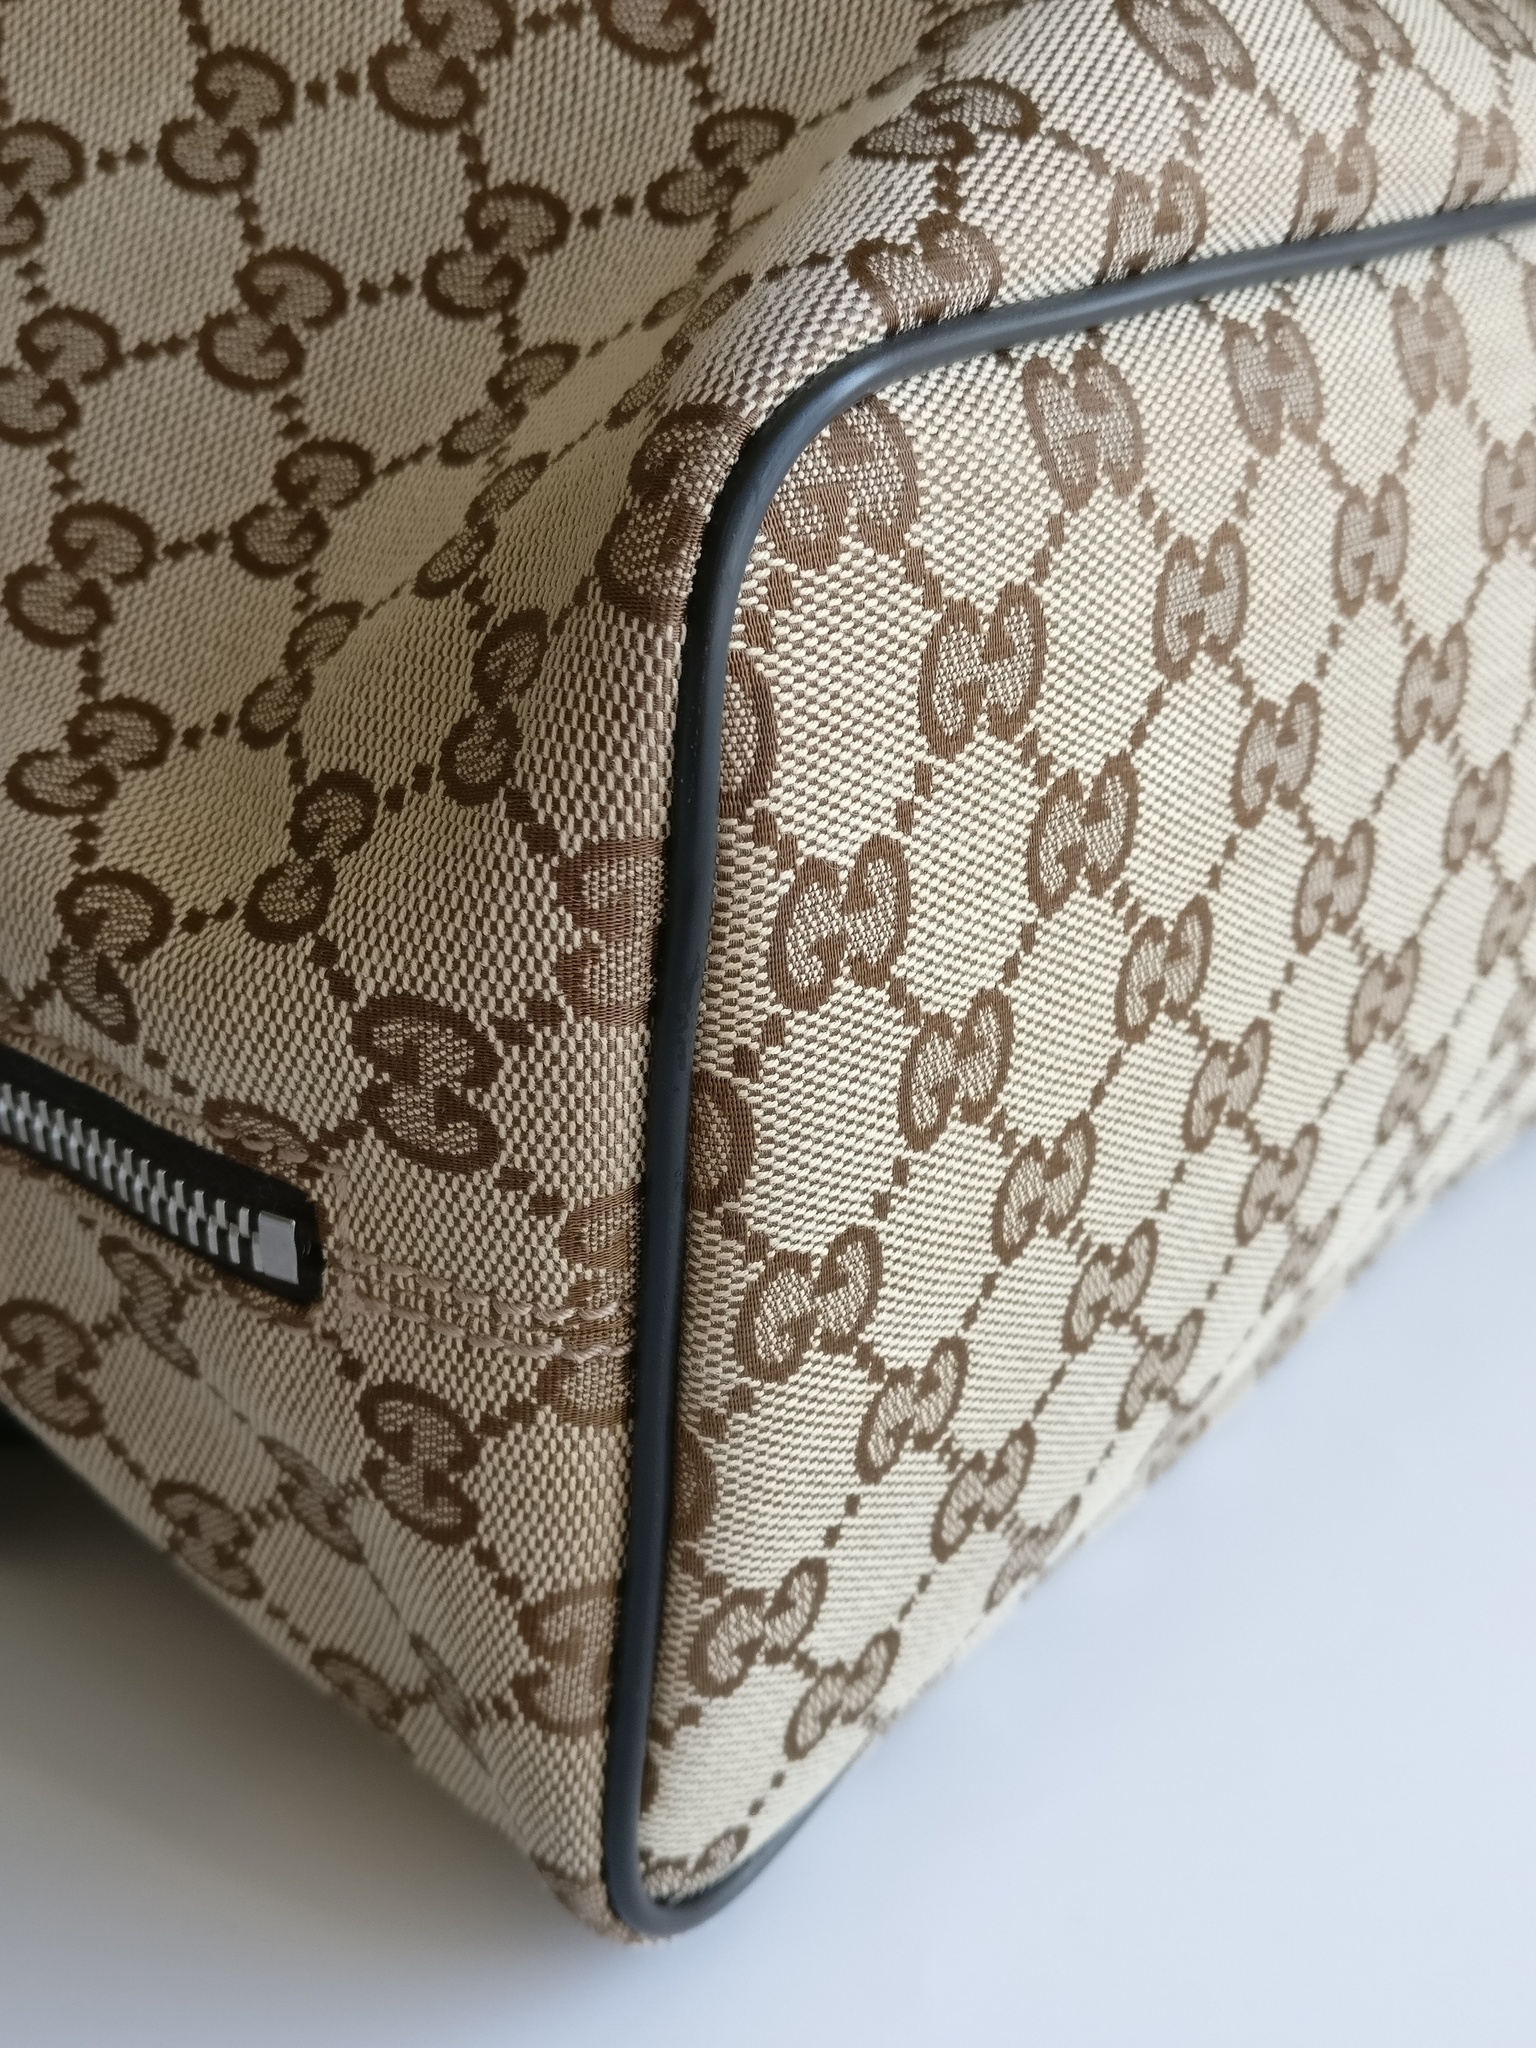 Gucci Drawstring Backpack